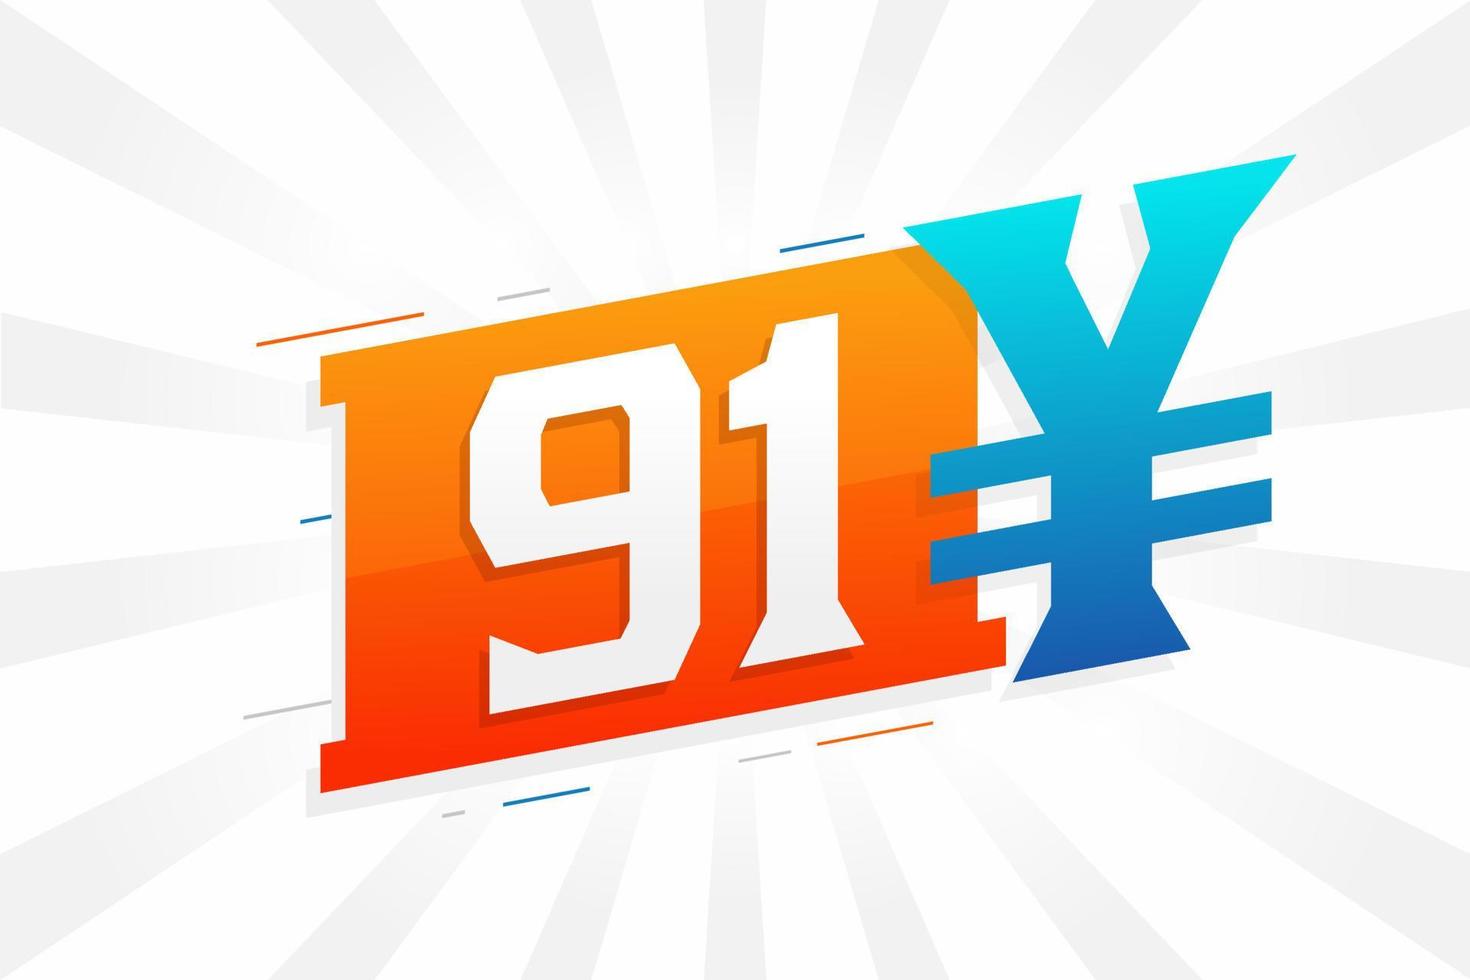 Symbole de texte vectoriel de la monnaie chinoise de 91 yuans. 91 yen monnaie japonaise vecteur de stock d'argent